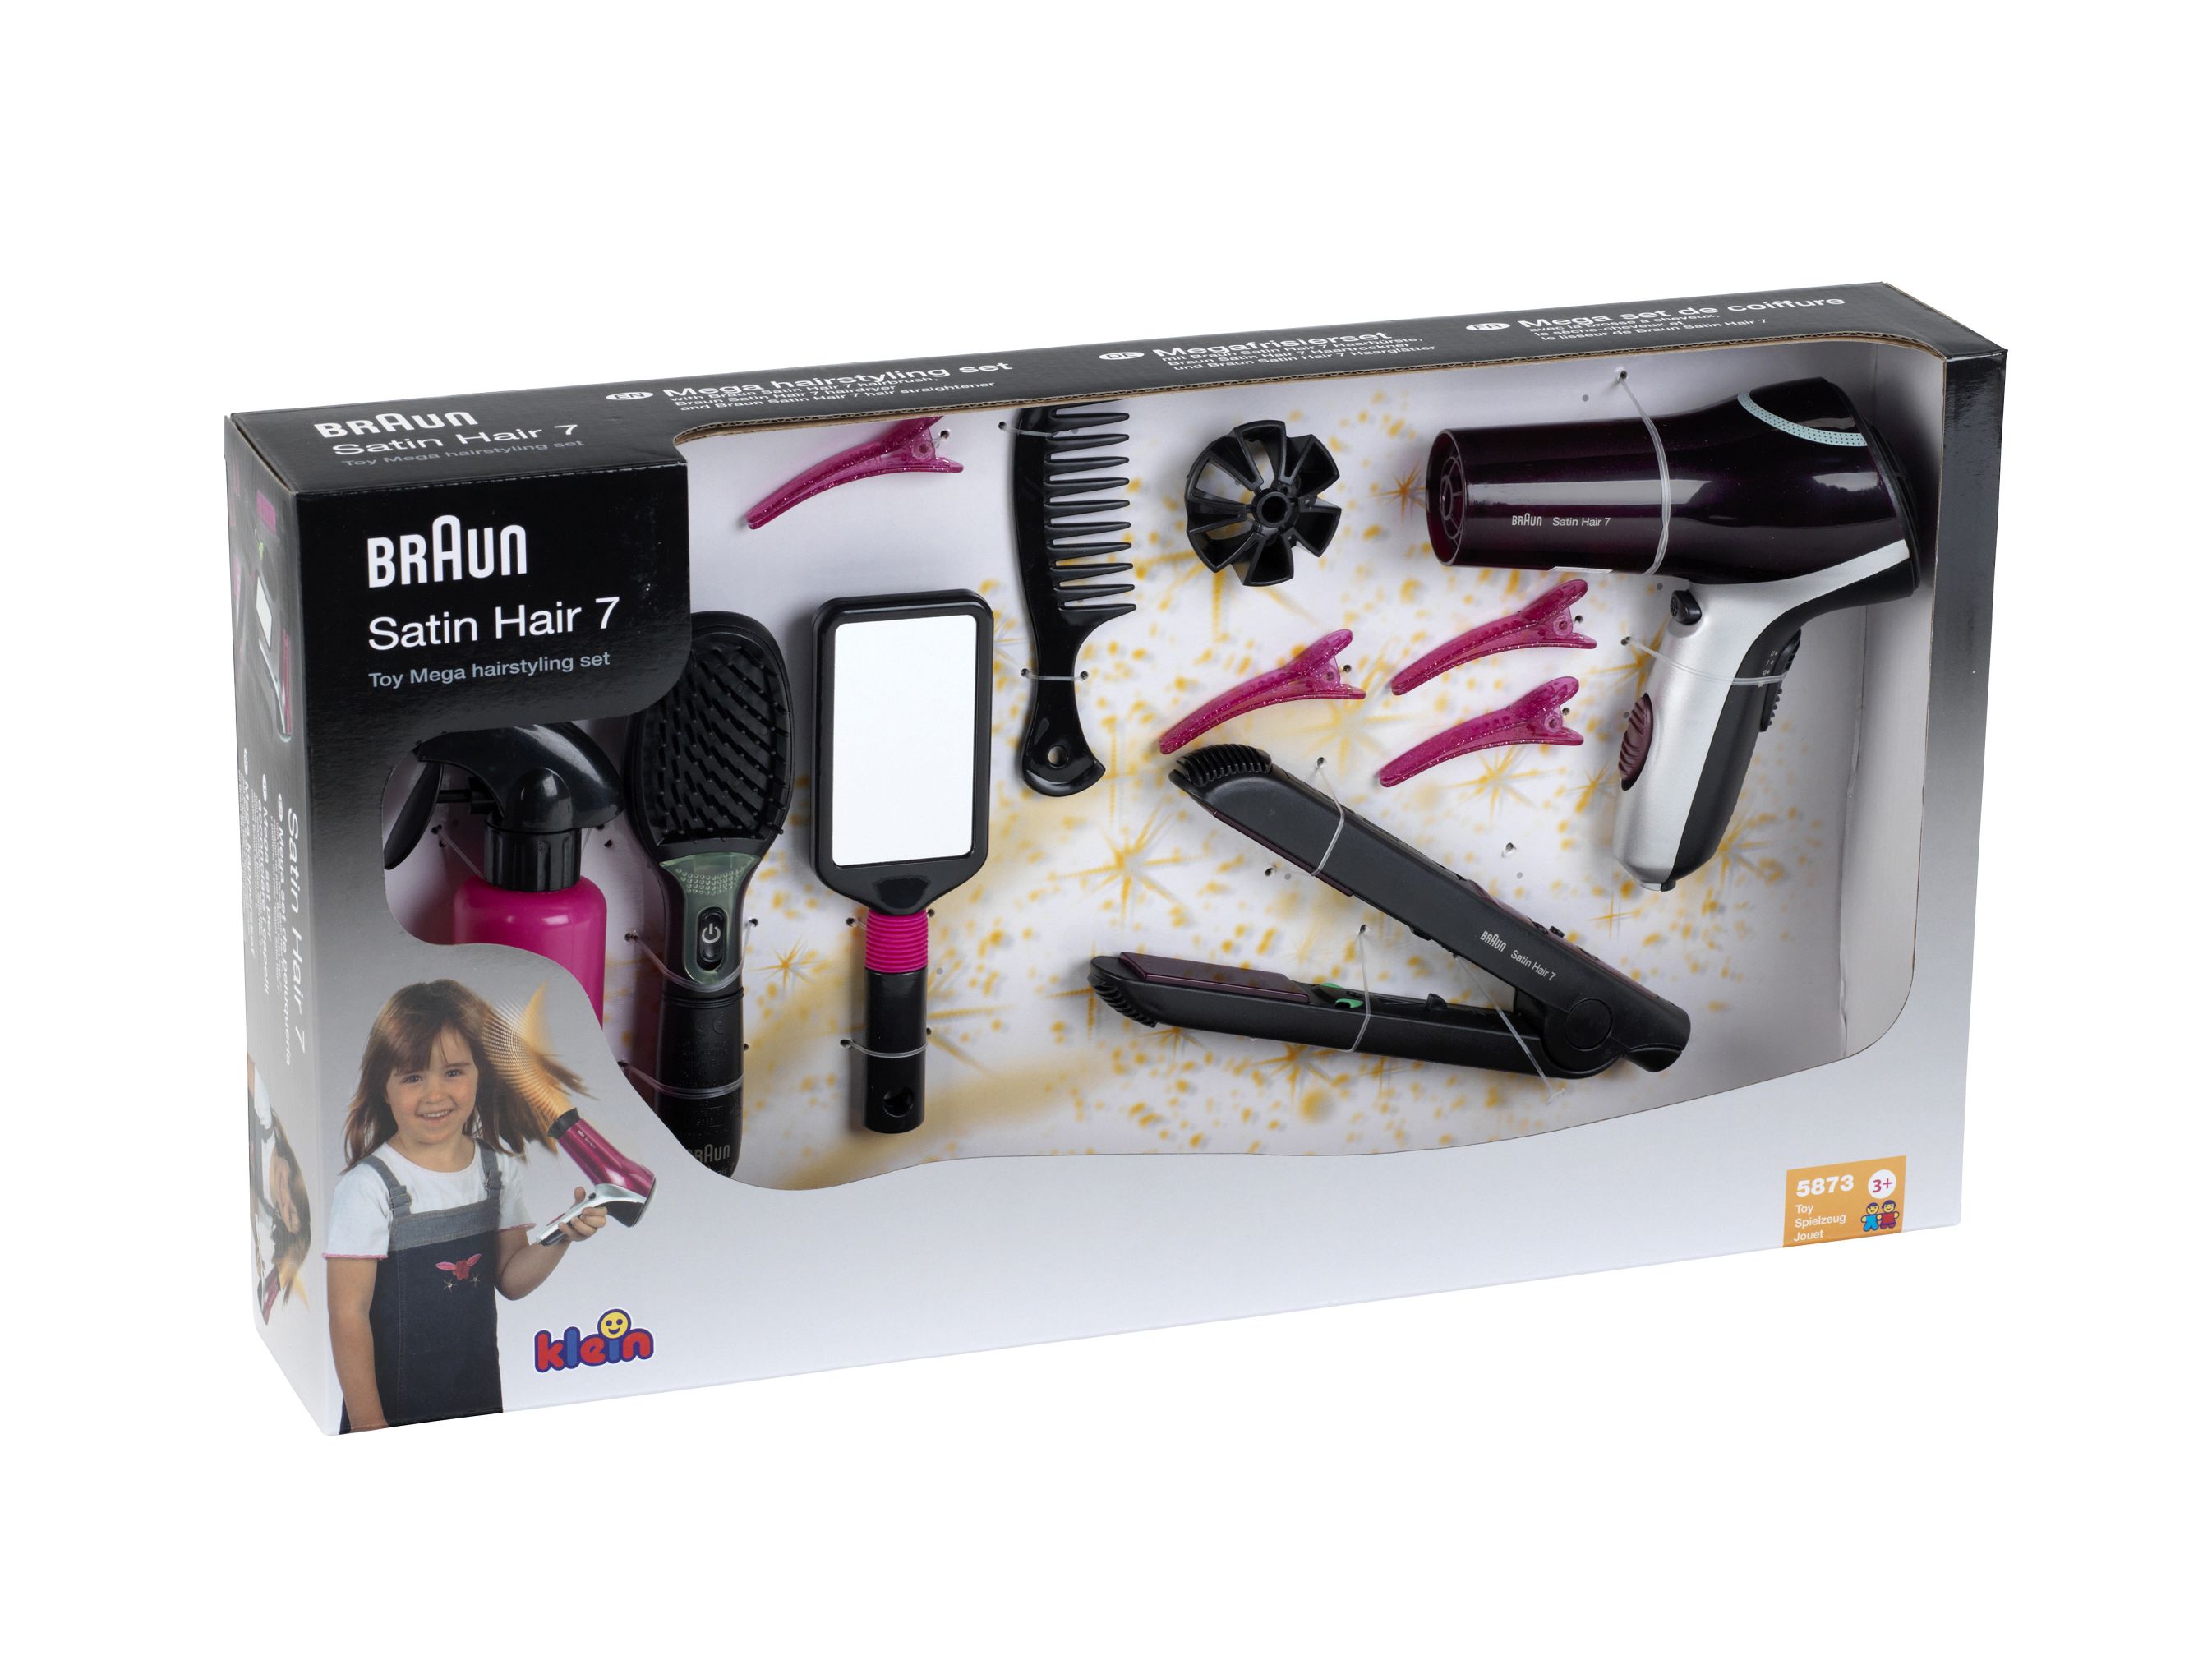 Braun Mega Hairstyling Set with Satin Hair 7 Hairbrush | Klein Toys